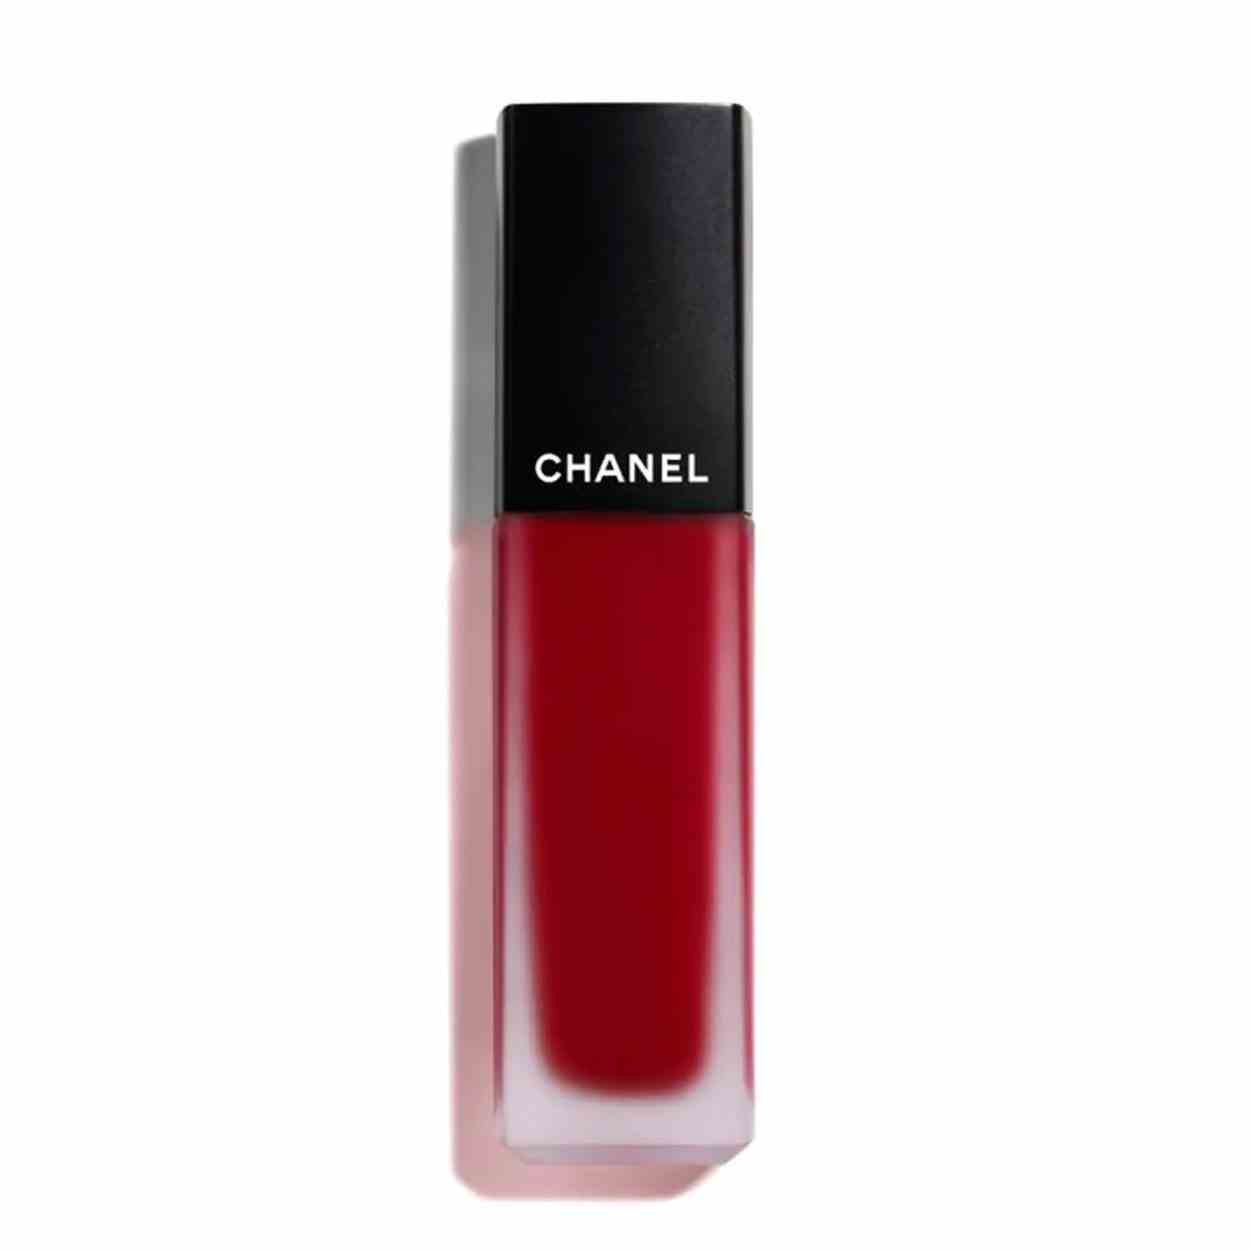 Chanel Rouge Allure Tintenroter flüssiger Lippenstift mit schwarzer Kappe auf weißem Hintergrund